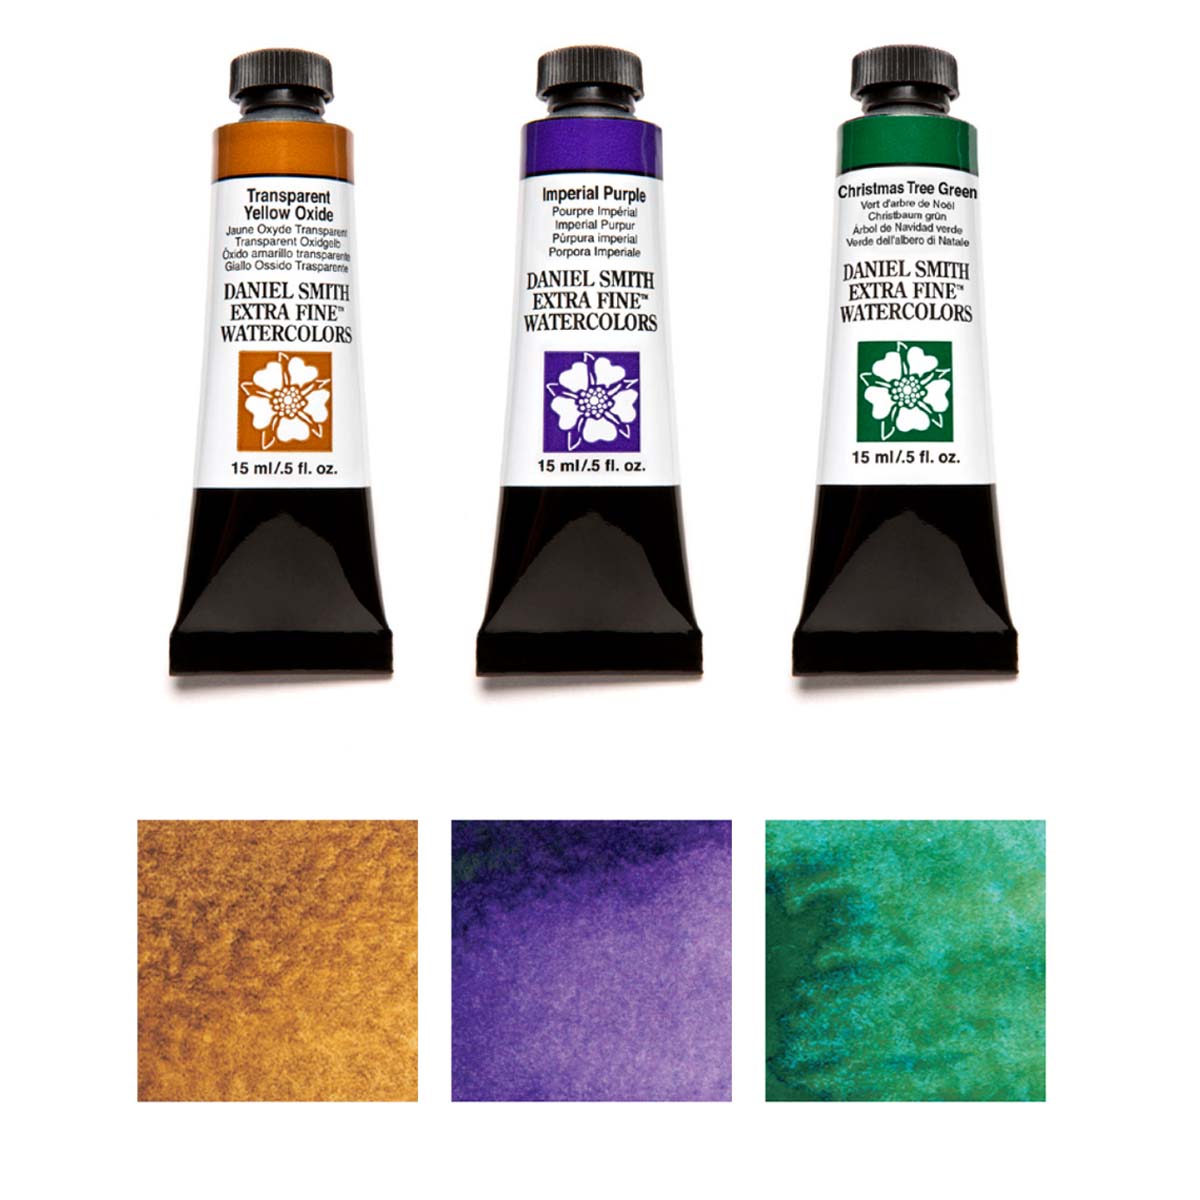 Qor Watercolor Granulators Half Pan Set of 6